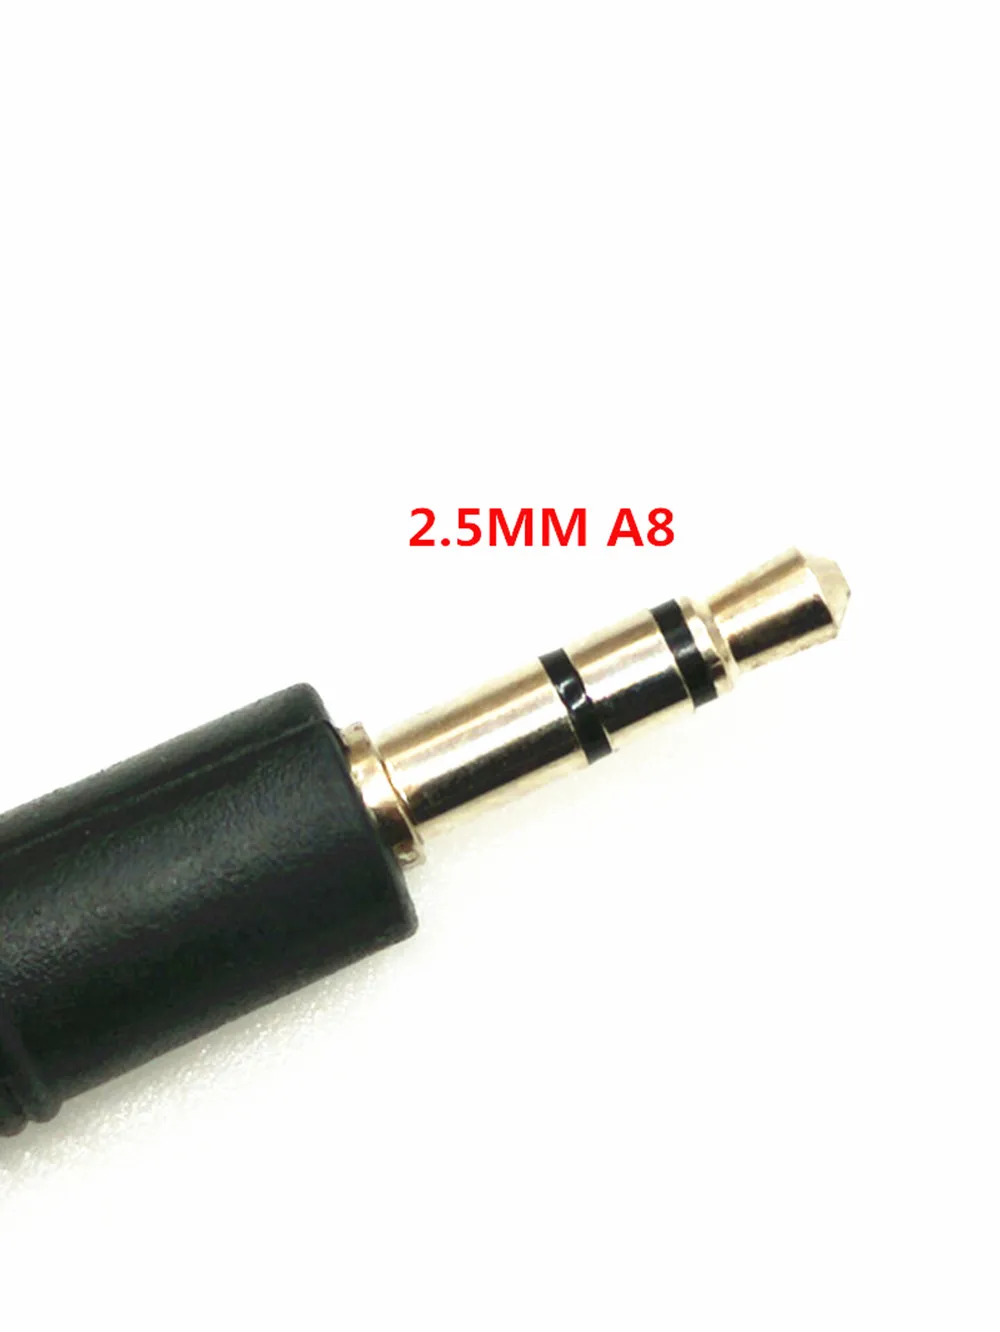 6 в 1 USB программный кабель адаптер для Motorola HYT ICOM BAOFENG PUXING KENWOOD YAESU радио рация J056